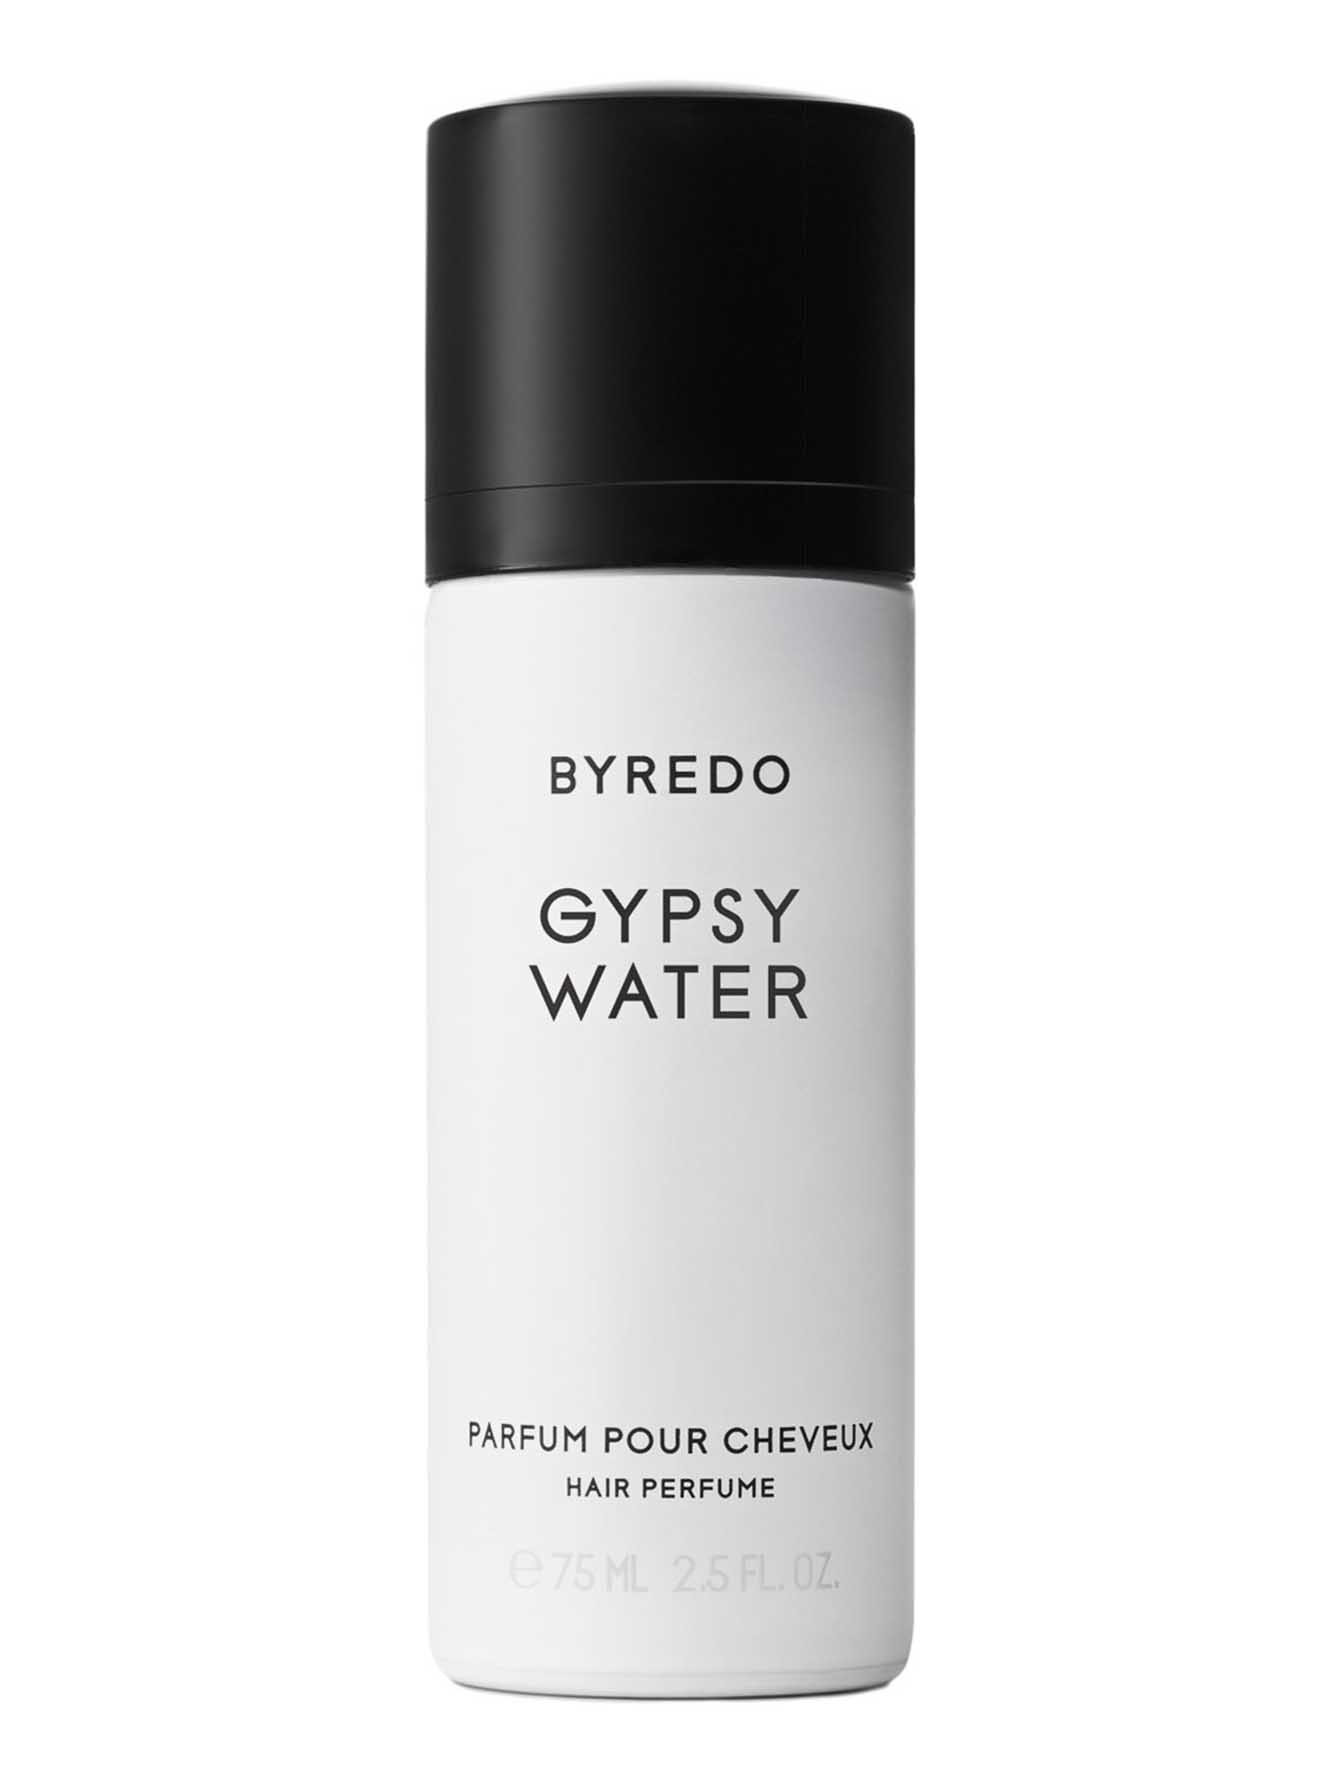 Парфюм для волос Gypsy Water, 75 мл - Общий вид